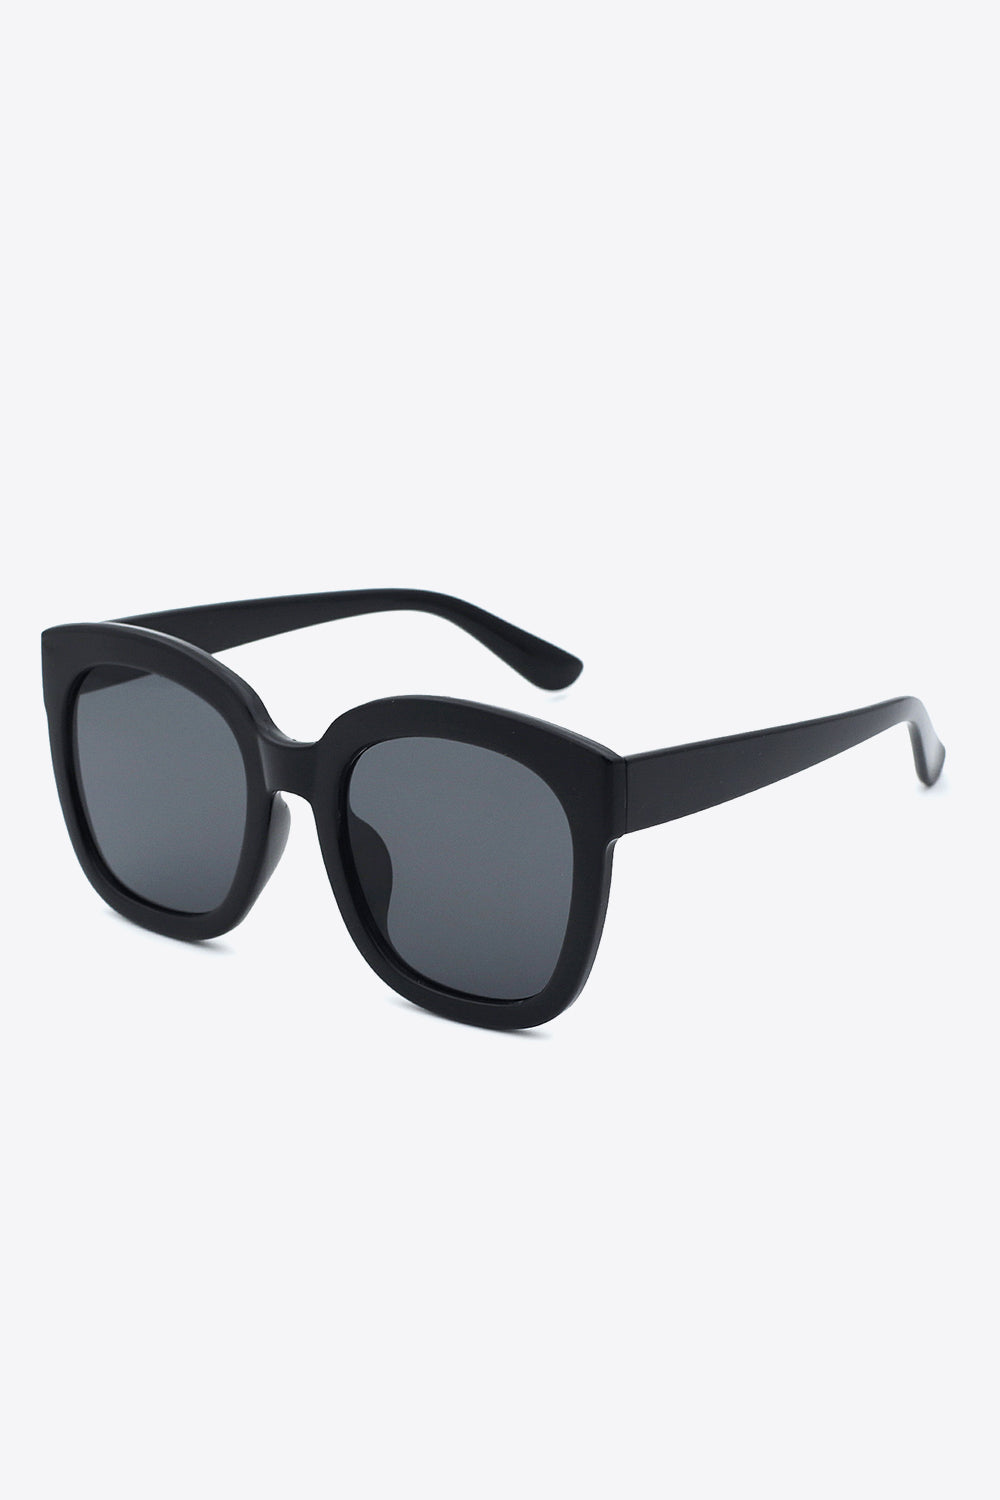 Polycarbonate Frame Square Sunglasses Black One Size Sunglasses by Vim&Vigor | Vim&Vigor Boutique